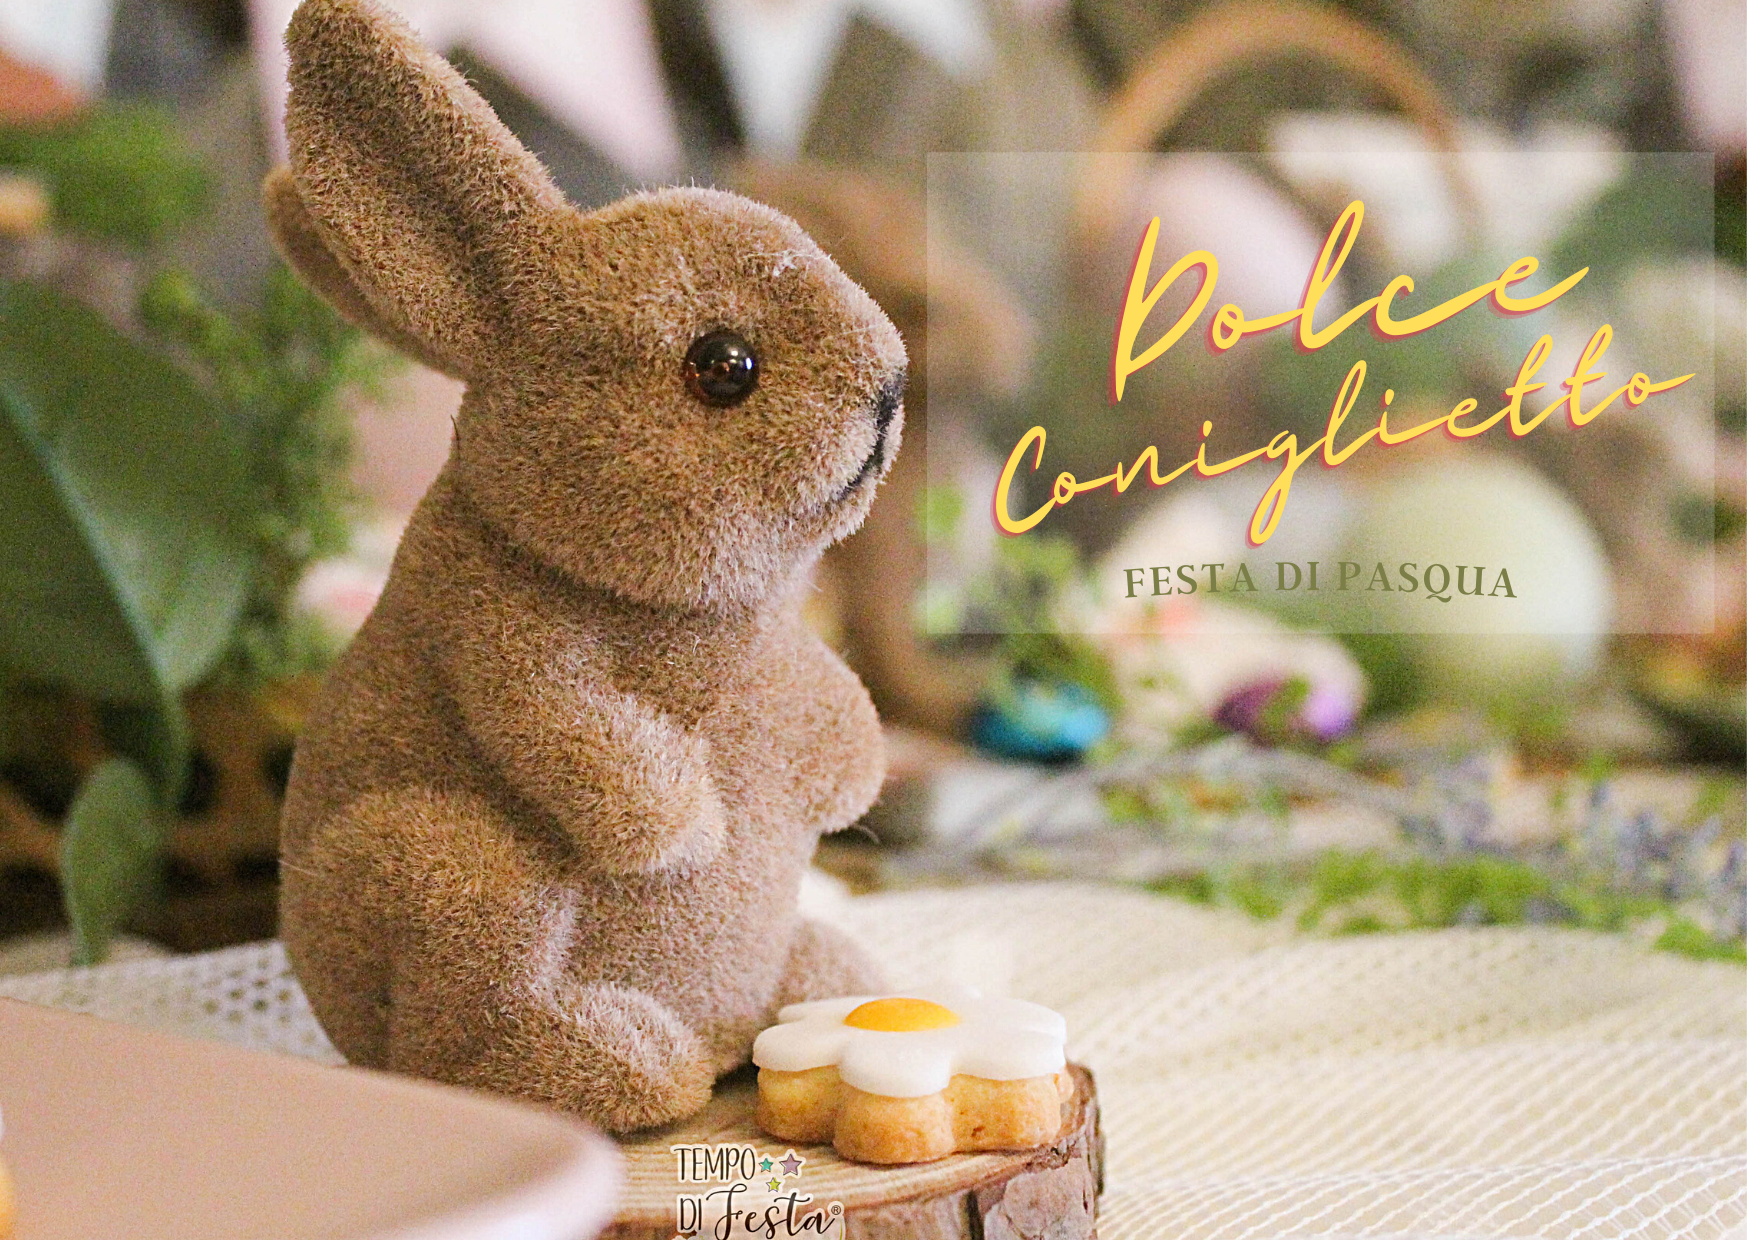 pasqua sweet bunny corto it